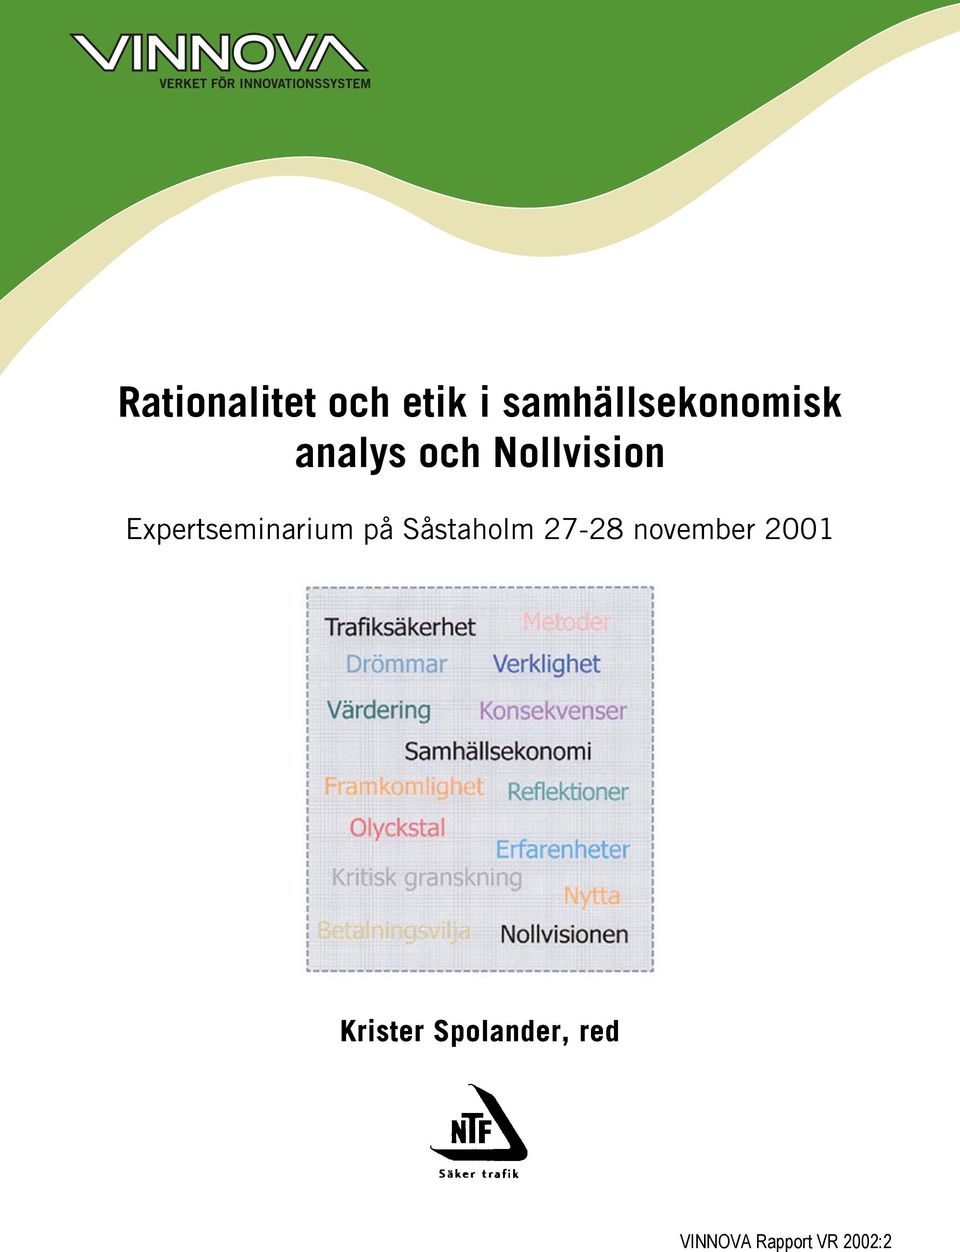 Expertseminarium på Såstaholm 27-28